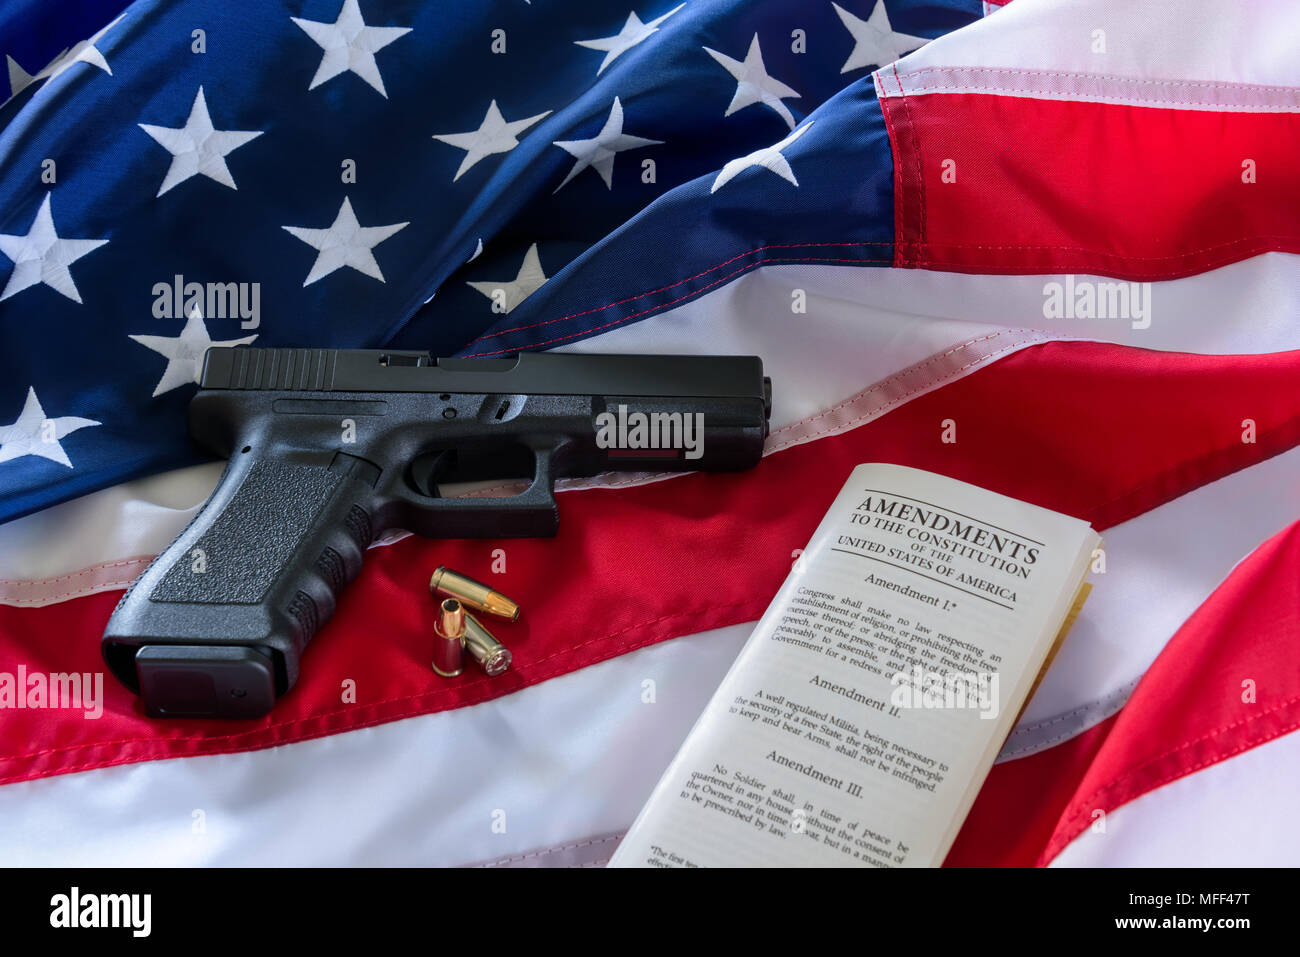 Die zweite Änderung und Waffenbesitz in den USA, Konzept. Pistole, Aufzählungszeichen und die amerikanische Verfassung auf der USA-Flagge. Stockfoto